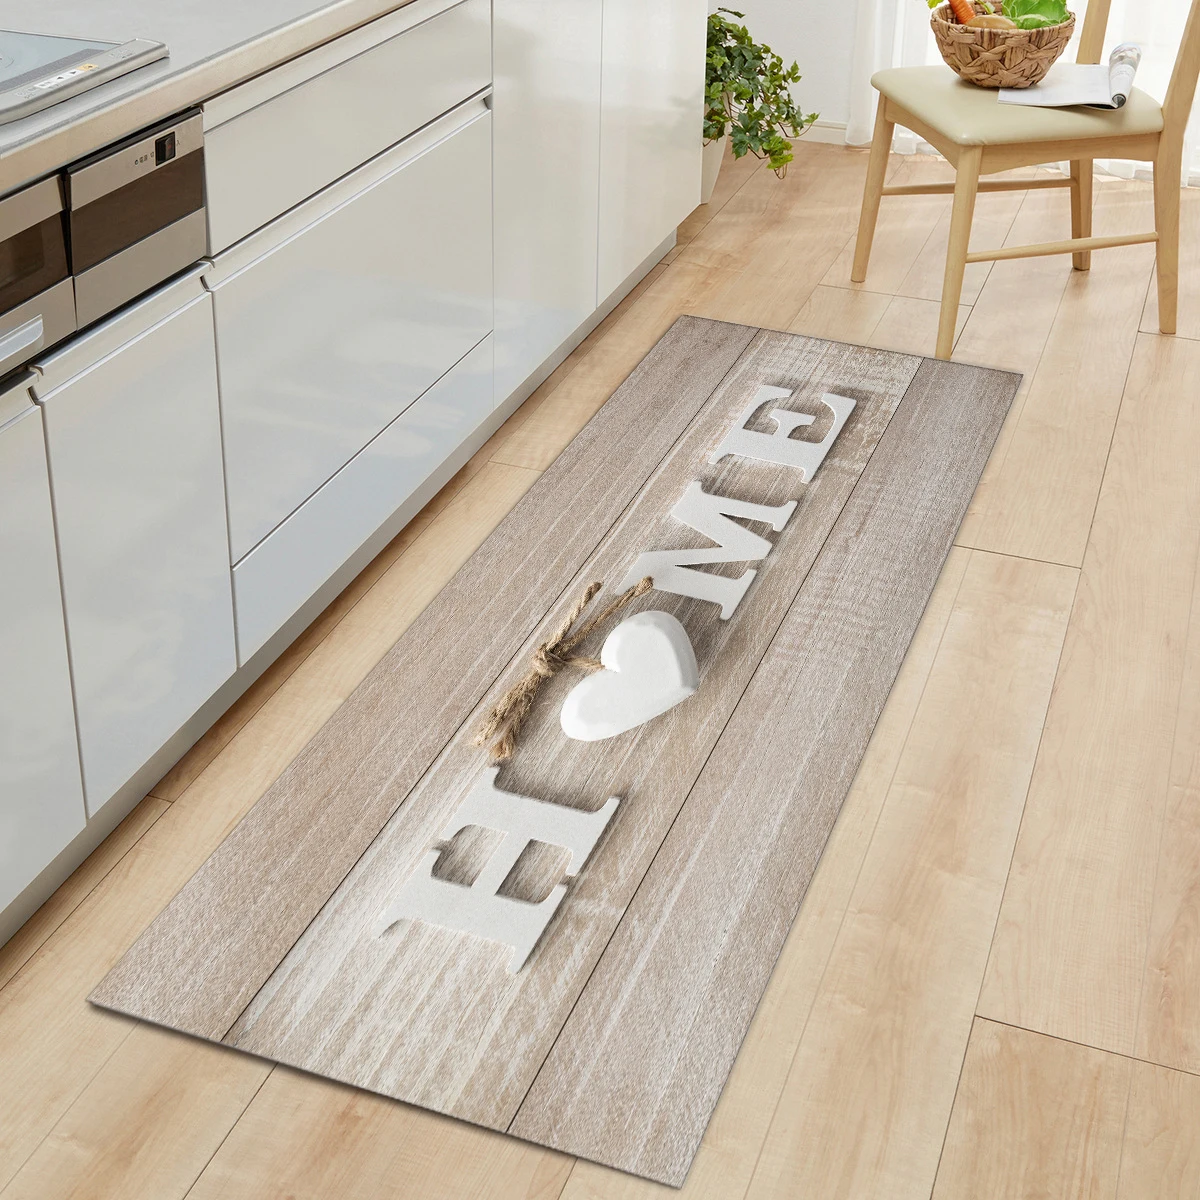 

Wood Grain Door Kitchen Mat Carpet Non-Slip Home Floor Mat Rugs Welcome Mats for Front Door Kitchen Living Room